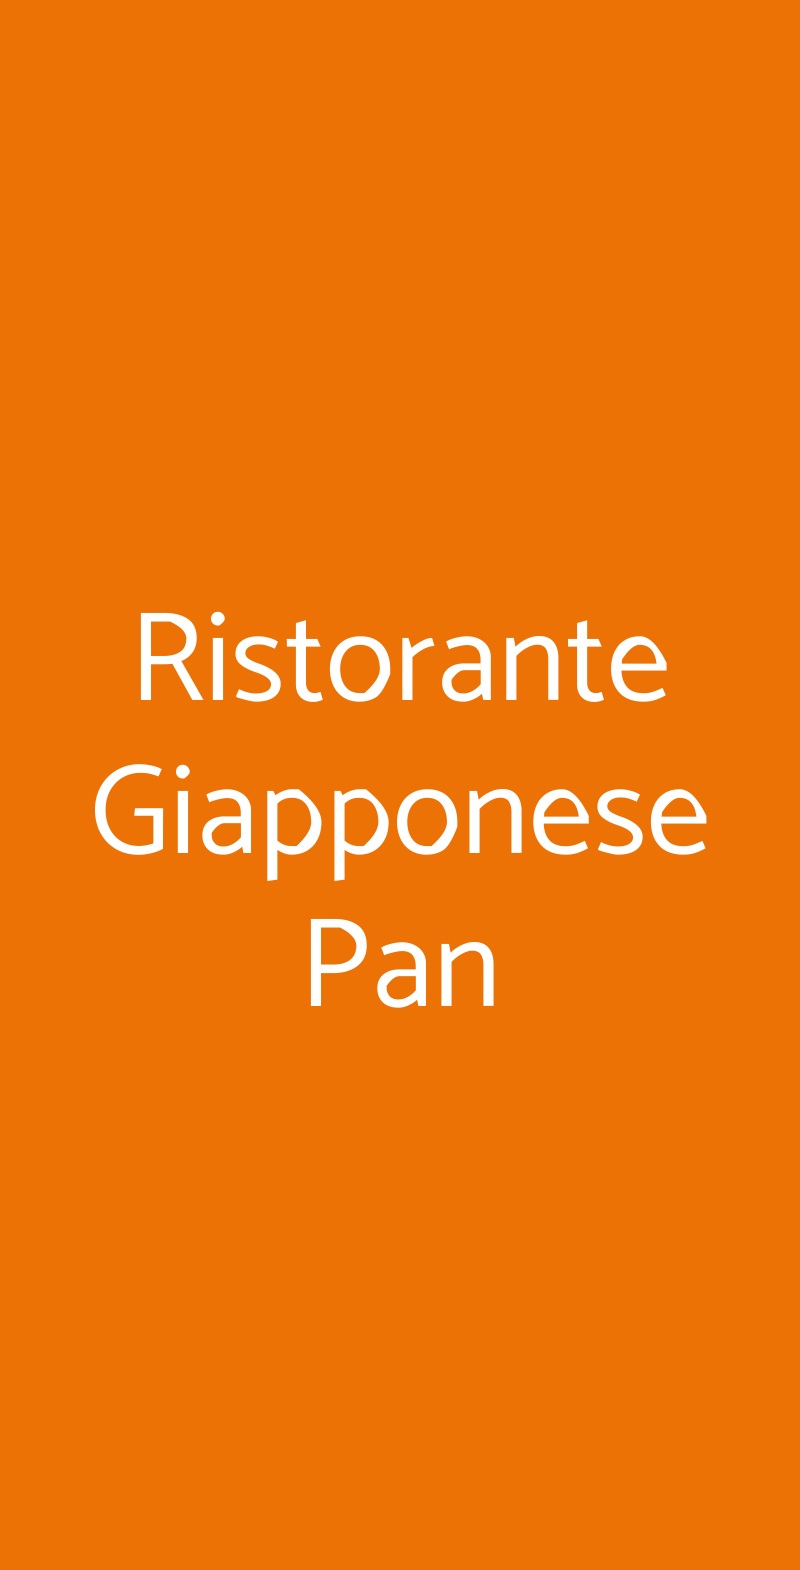 Ristorante Giapponese Pan Torino menù 1 pagina